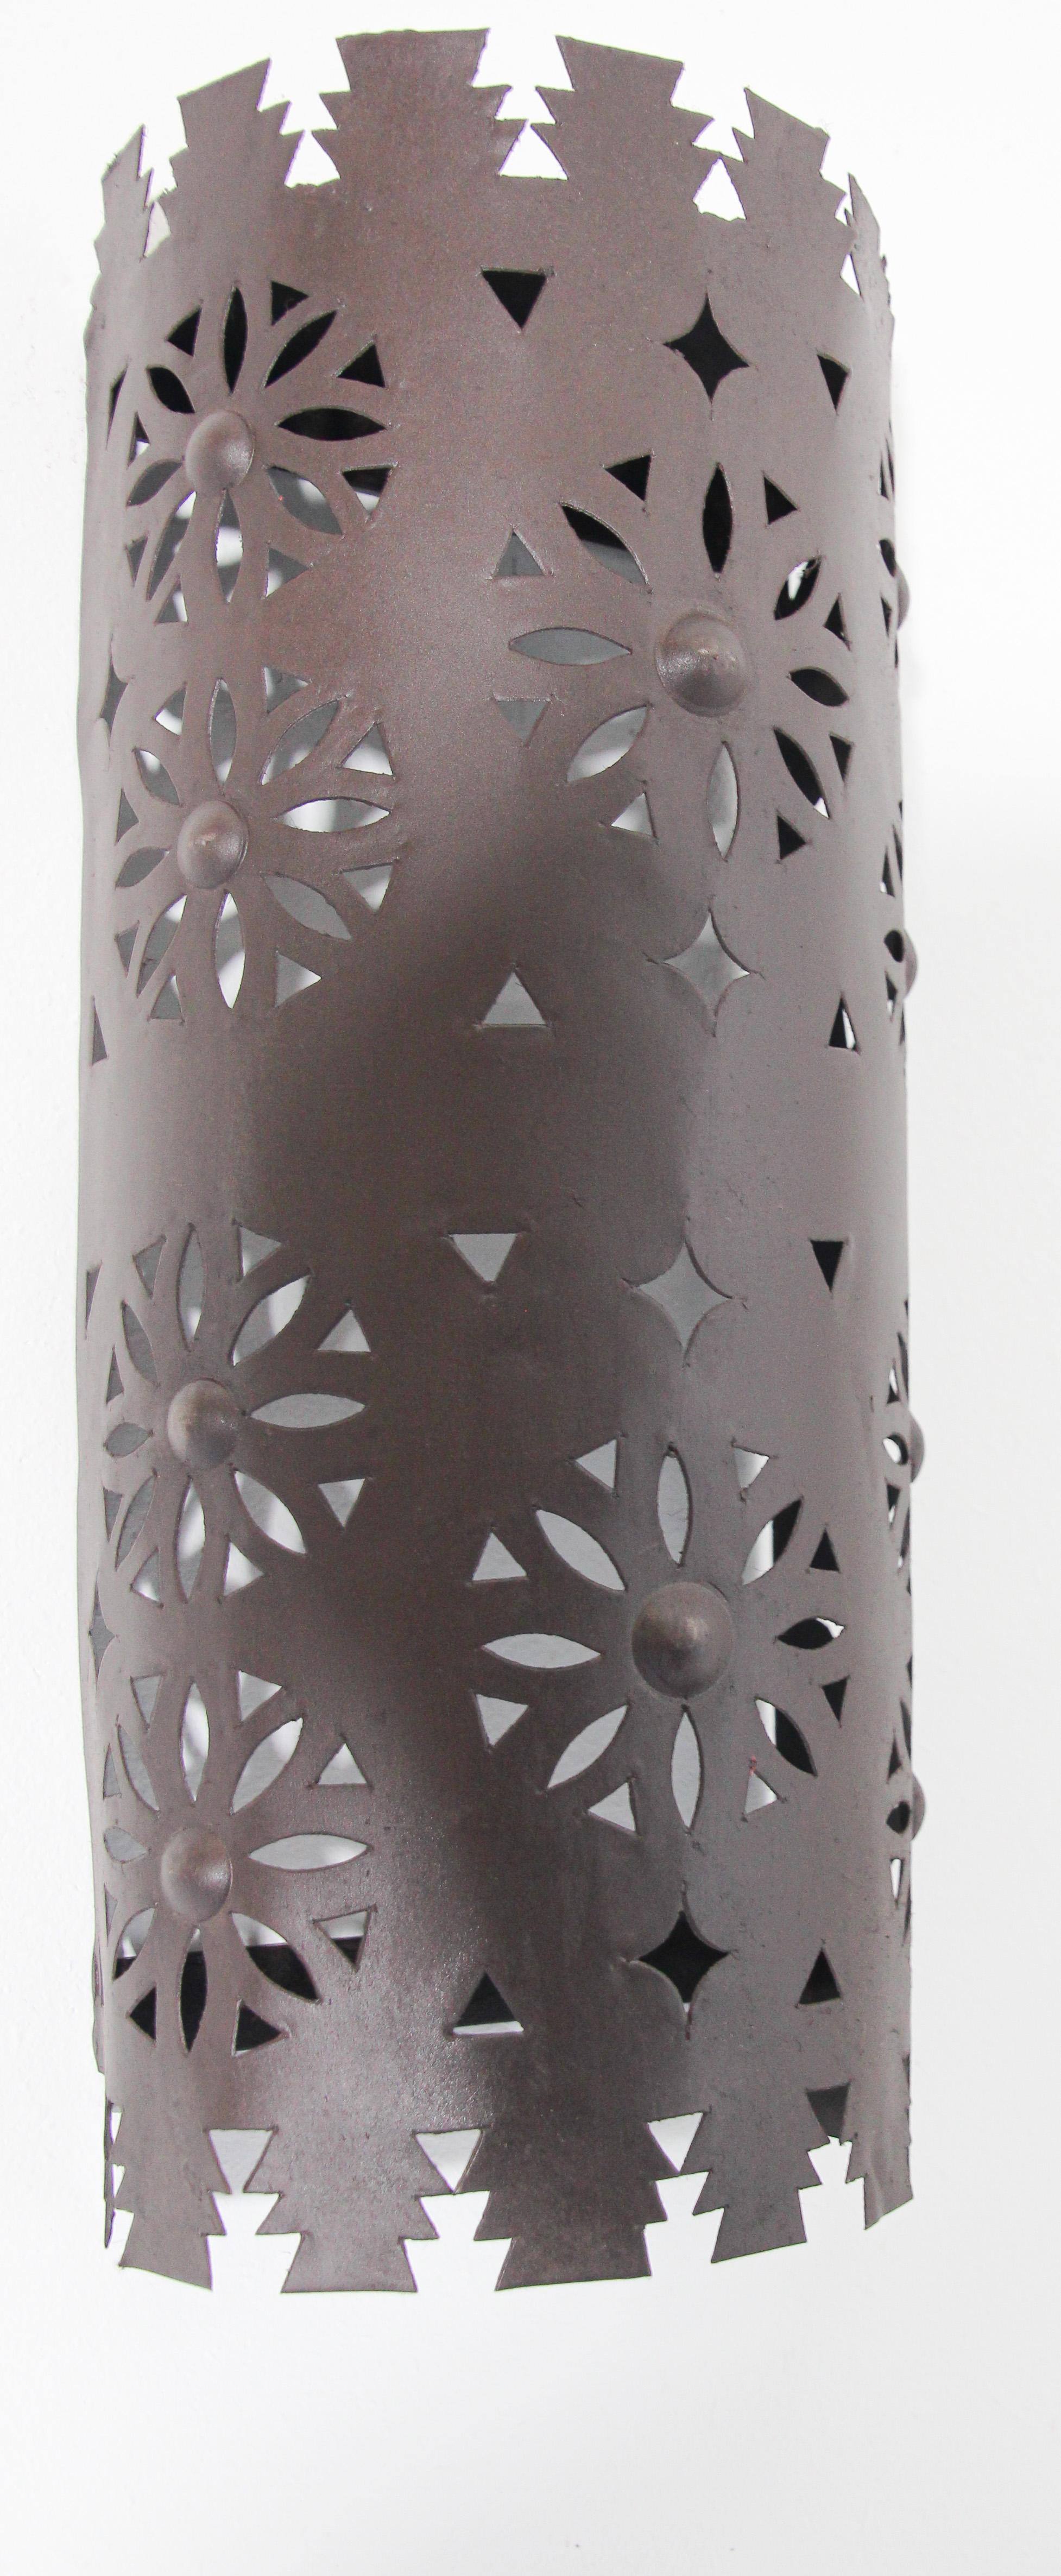 Abat-jour en métal en forme de cône, de style marocain et espagnol, fabriqué à la main.
Abat-jour d'applique Hispano Moresque avec des étoiles et des croissants de lune découpés.
Patine de finition rouille foncée,
À utiliser à l'intérieur ou à